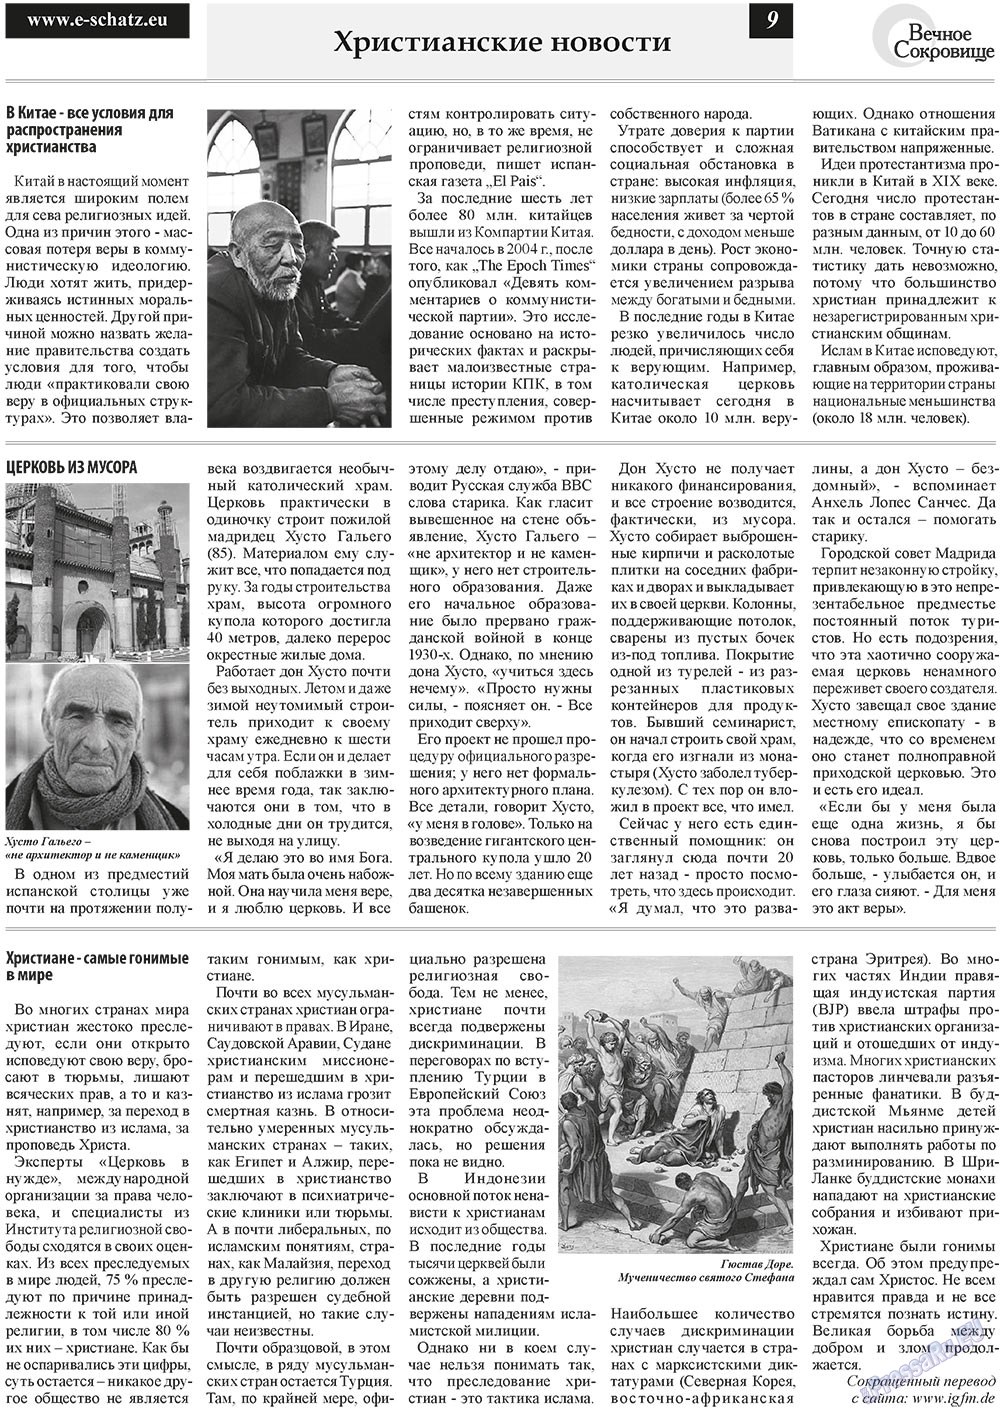 Вечное сокровище, газета. 2011 №1 стр.9